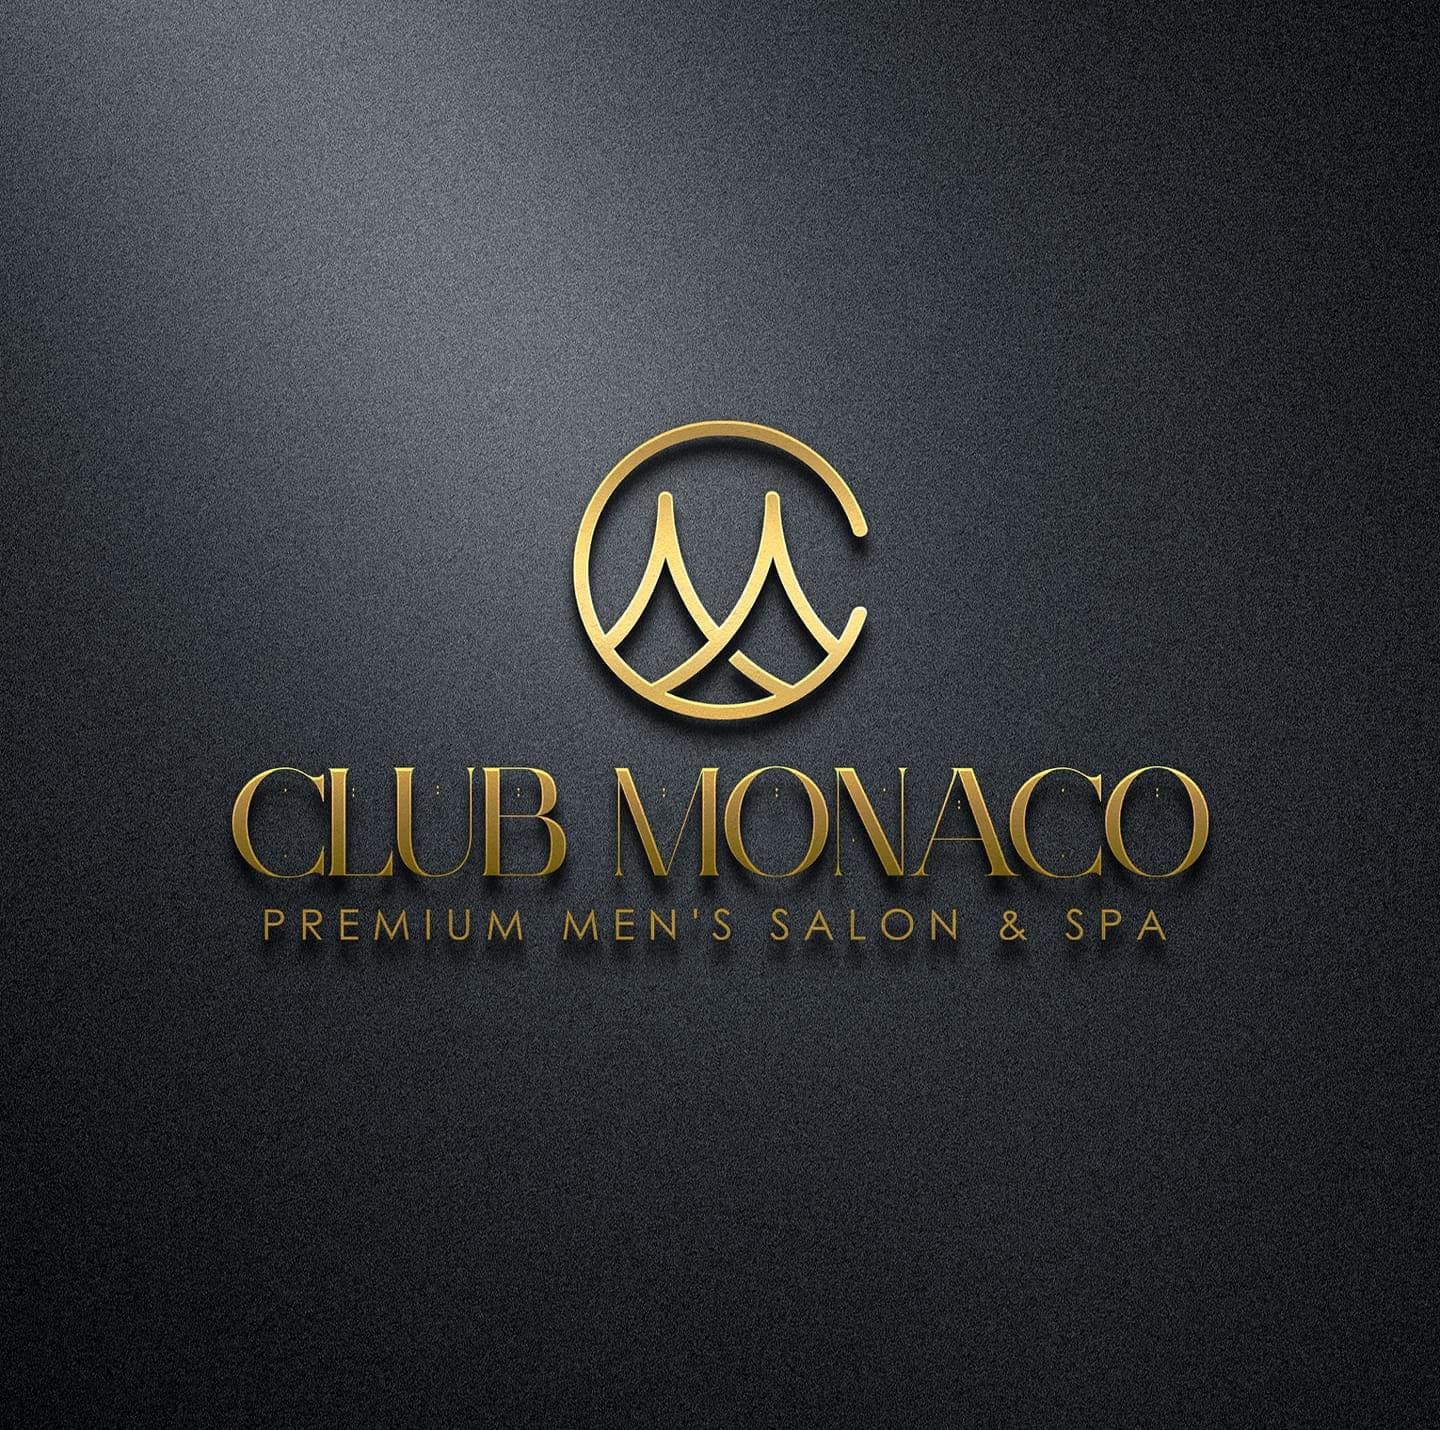 Club Monaco Premium Men's Salon & Spa